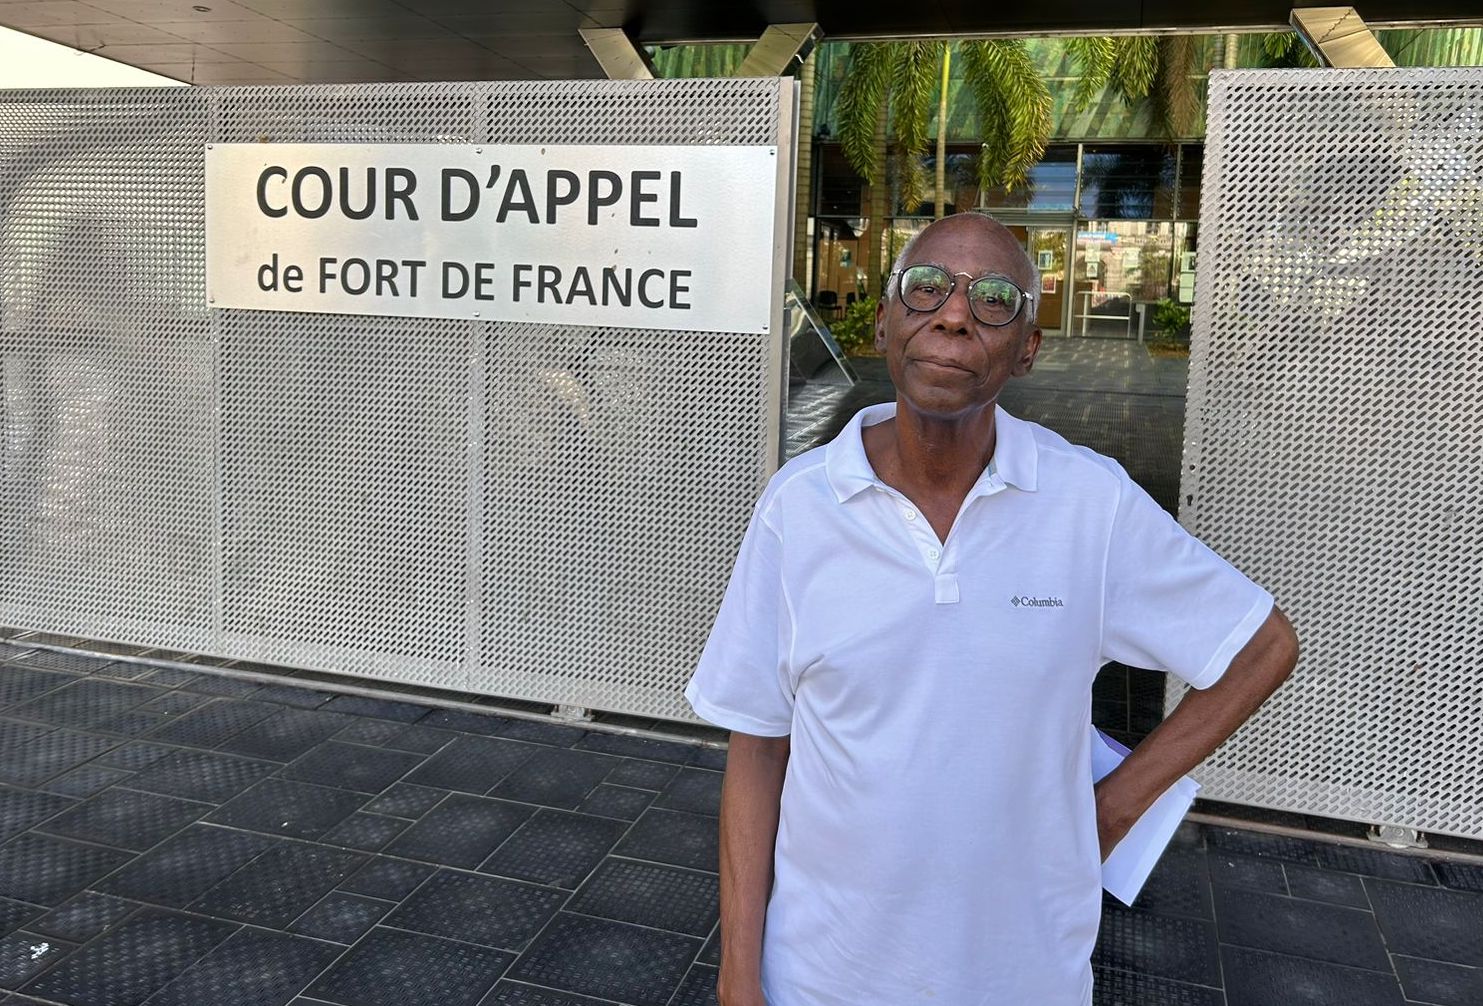     Détournements à l’AMEP : une peine allégée pour Jean-Louis Fonsat en appel

